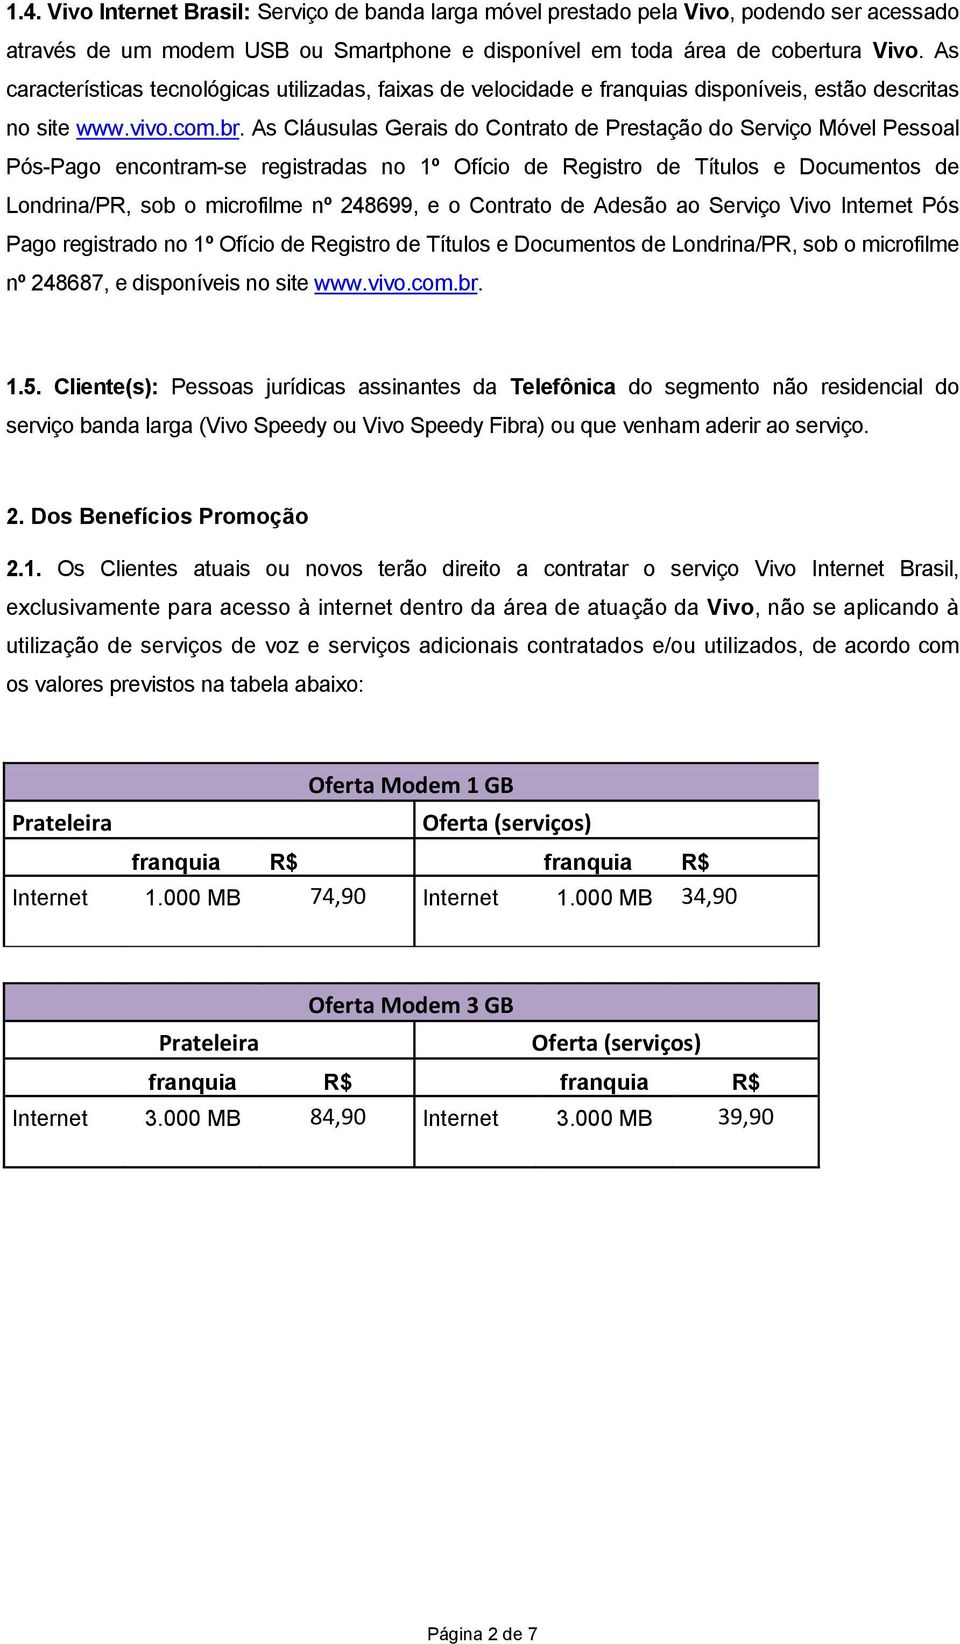 As Cláusulas Gerais do Contrato de Prestação do Serviço Móvel Pessoal Pós-Pago encontram-se registradas no 1º Ofício de Registro de Títulos e Documentos de Londrina/PR, sob o microfilme nº 248699, e